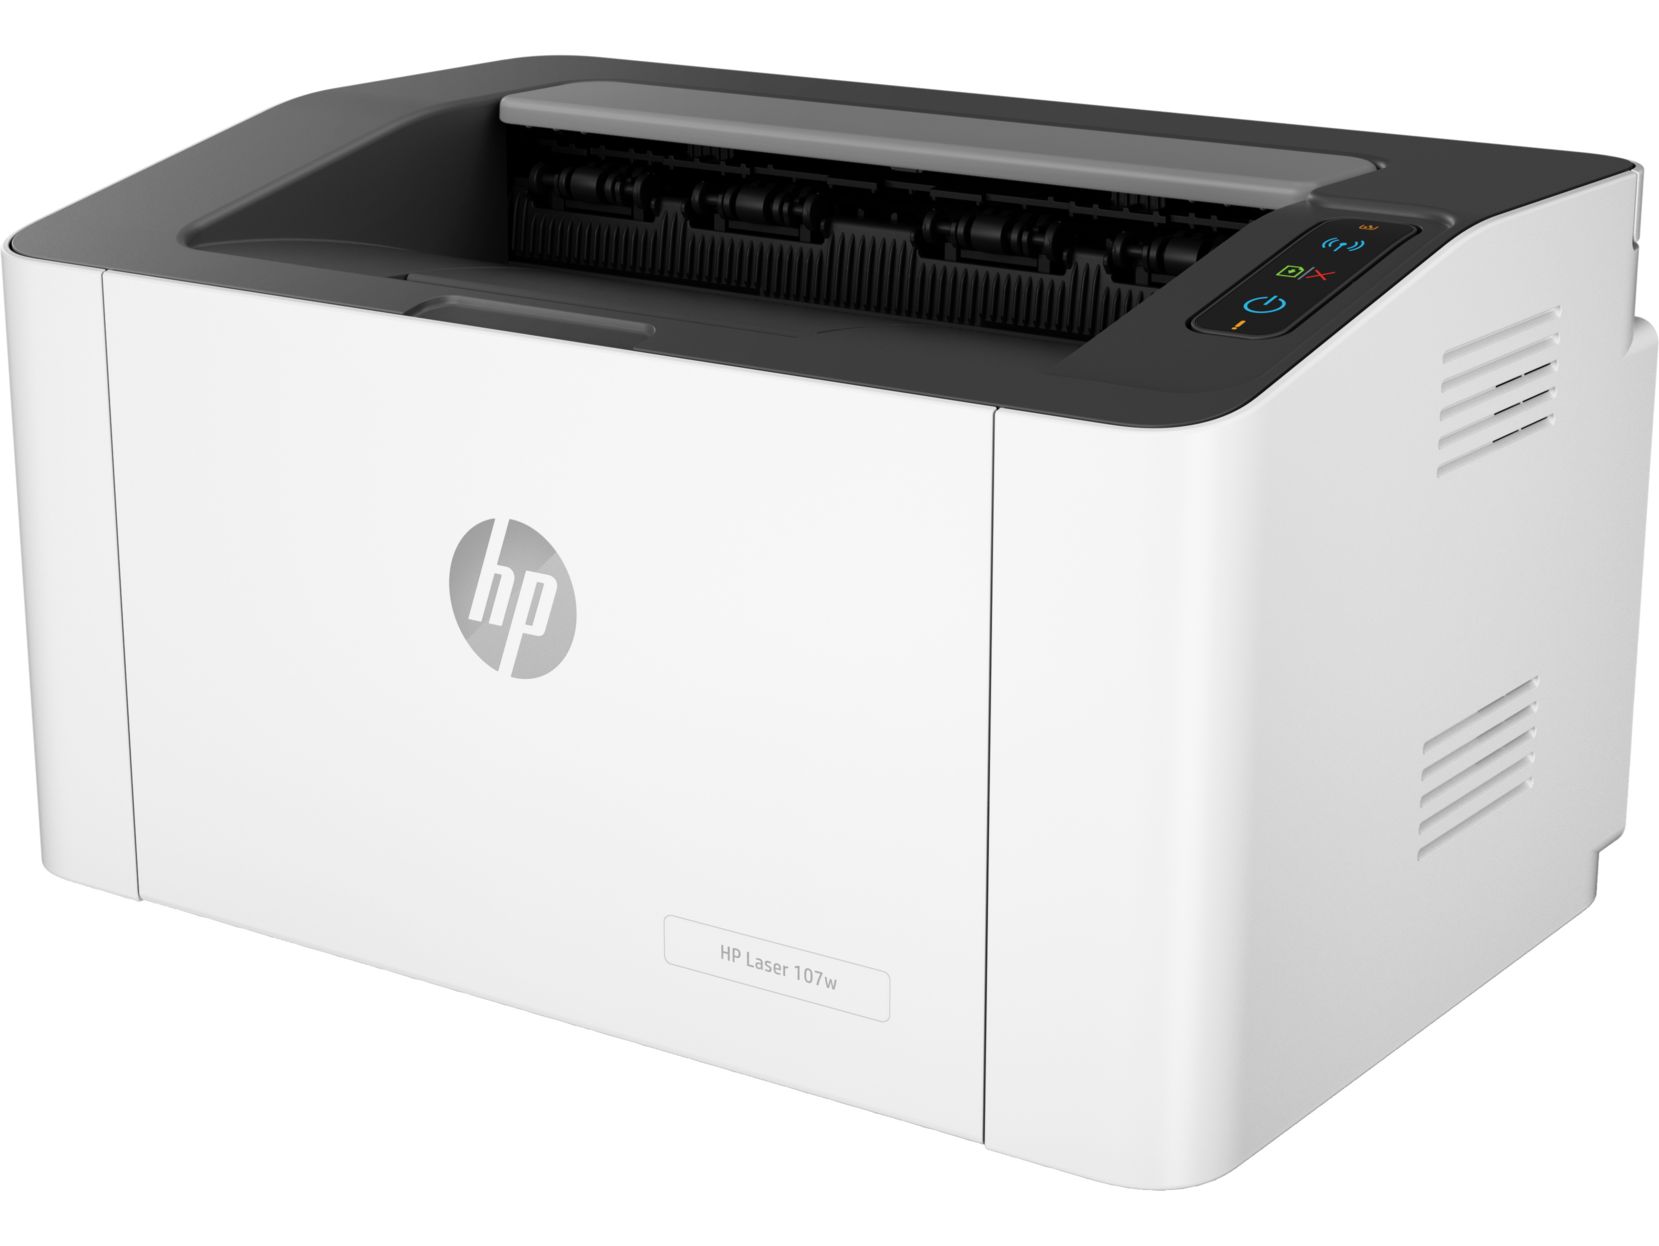 Принтер HP Laser 107w принтер лазерный hp laser 107w 4zb78a a4 wifi белый